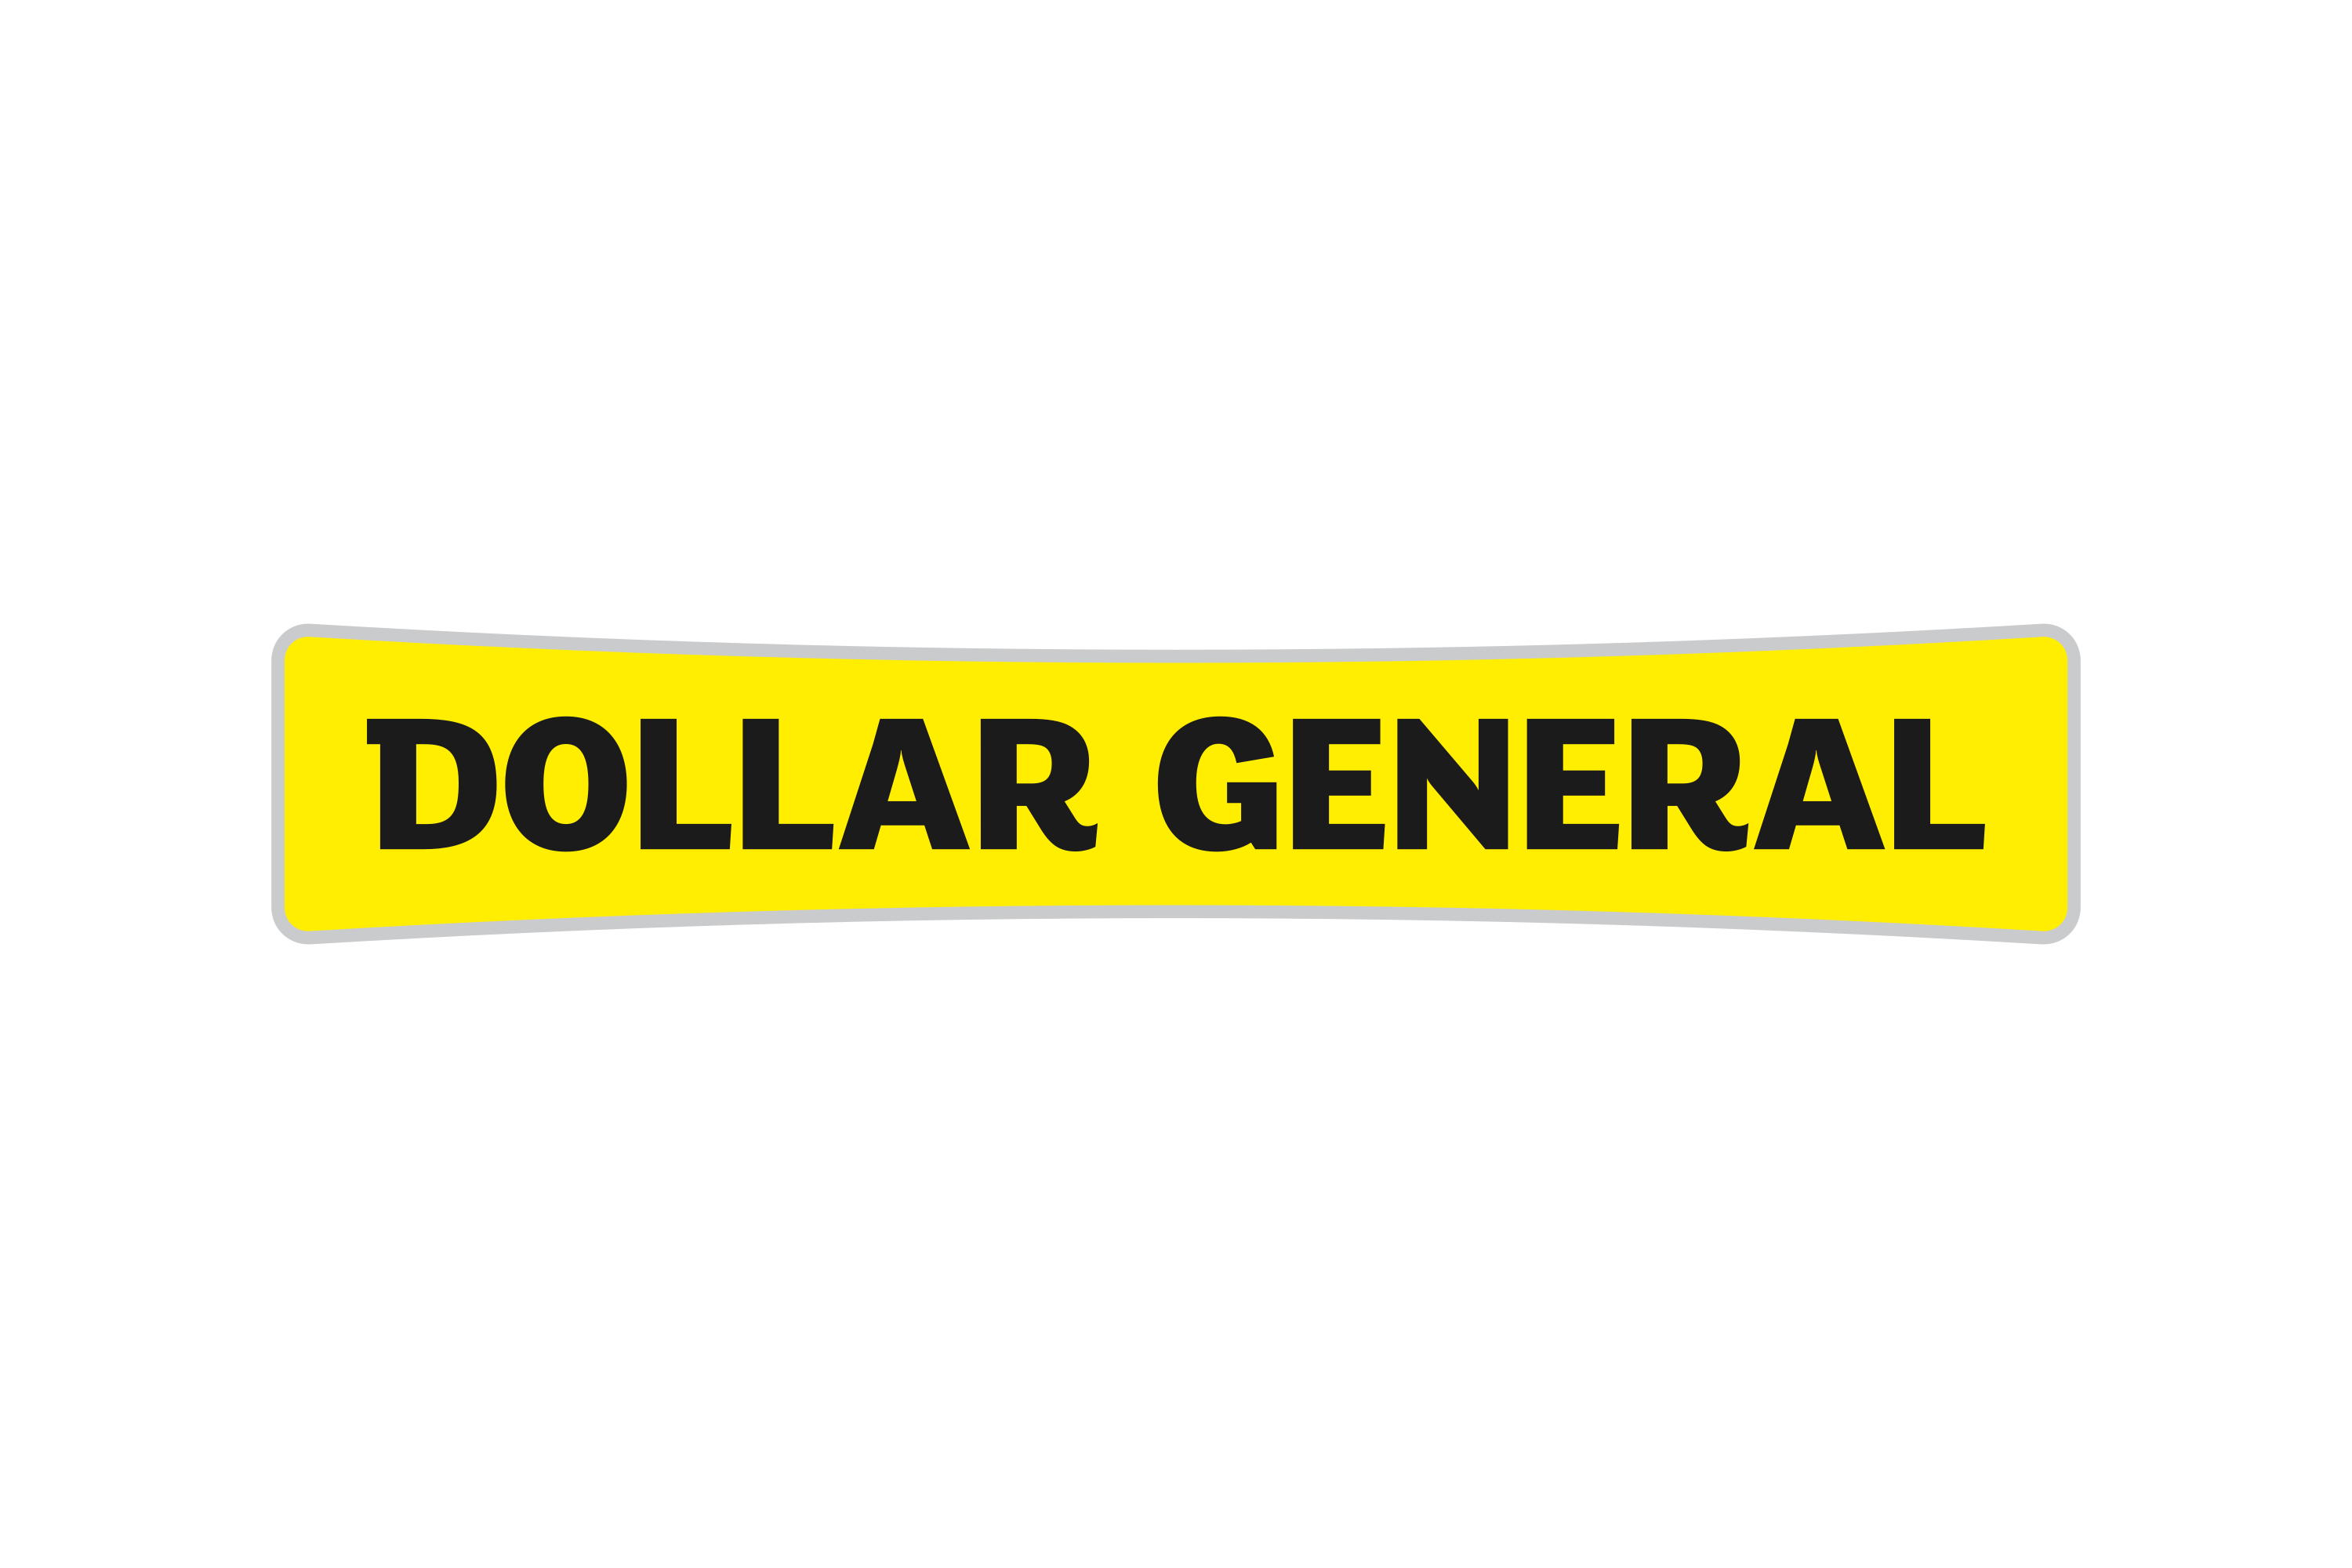 Download Download Dollar General Logo in SVG Vector or PNG File ...